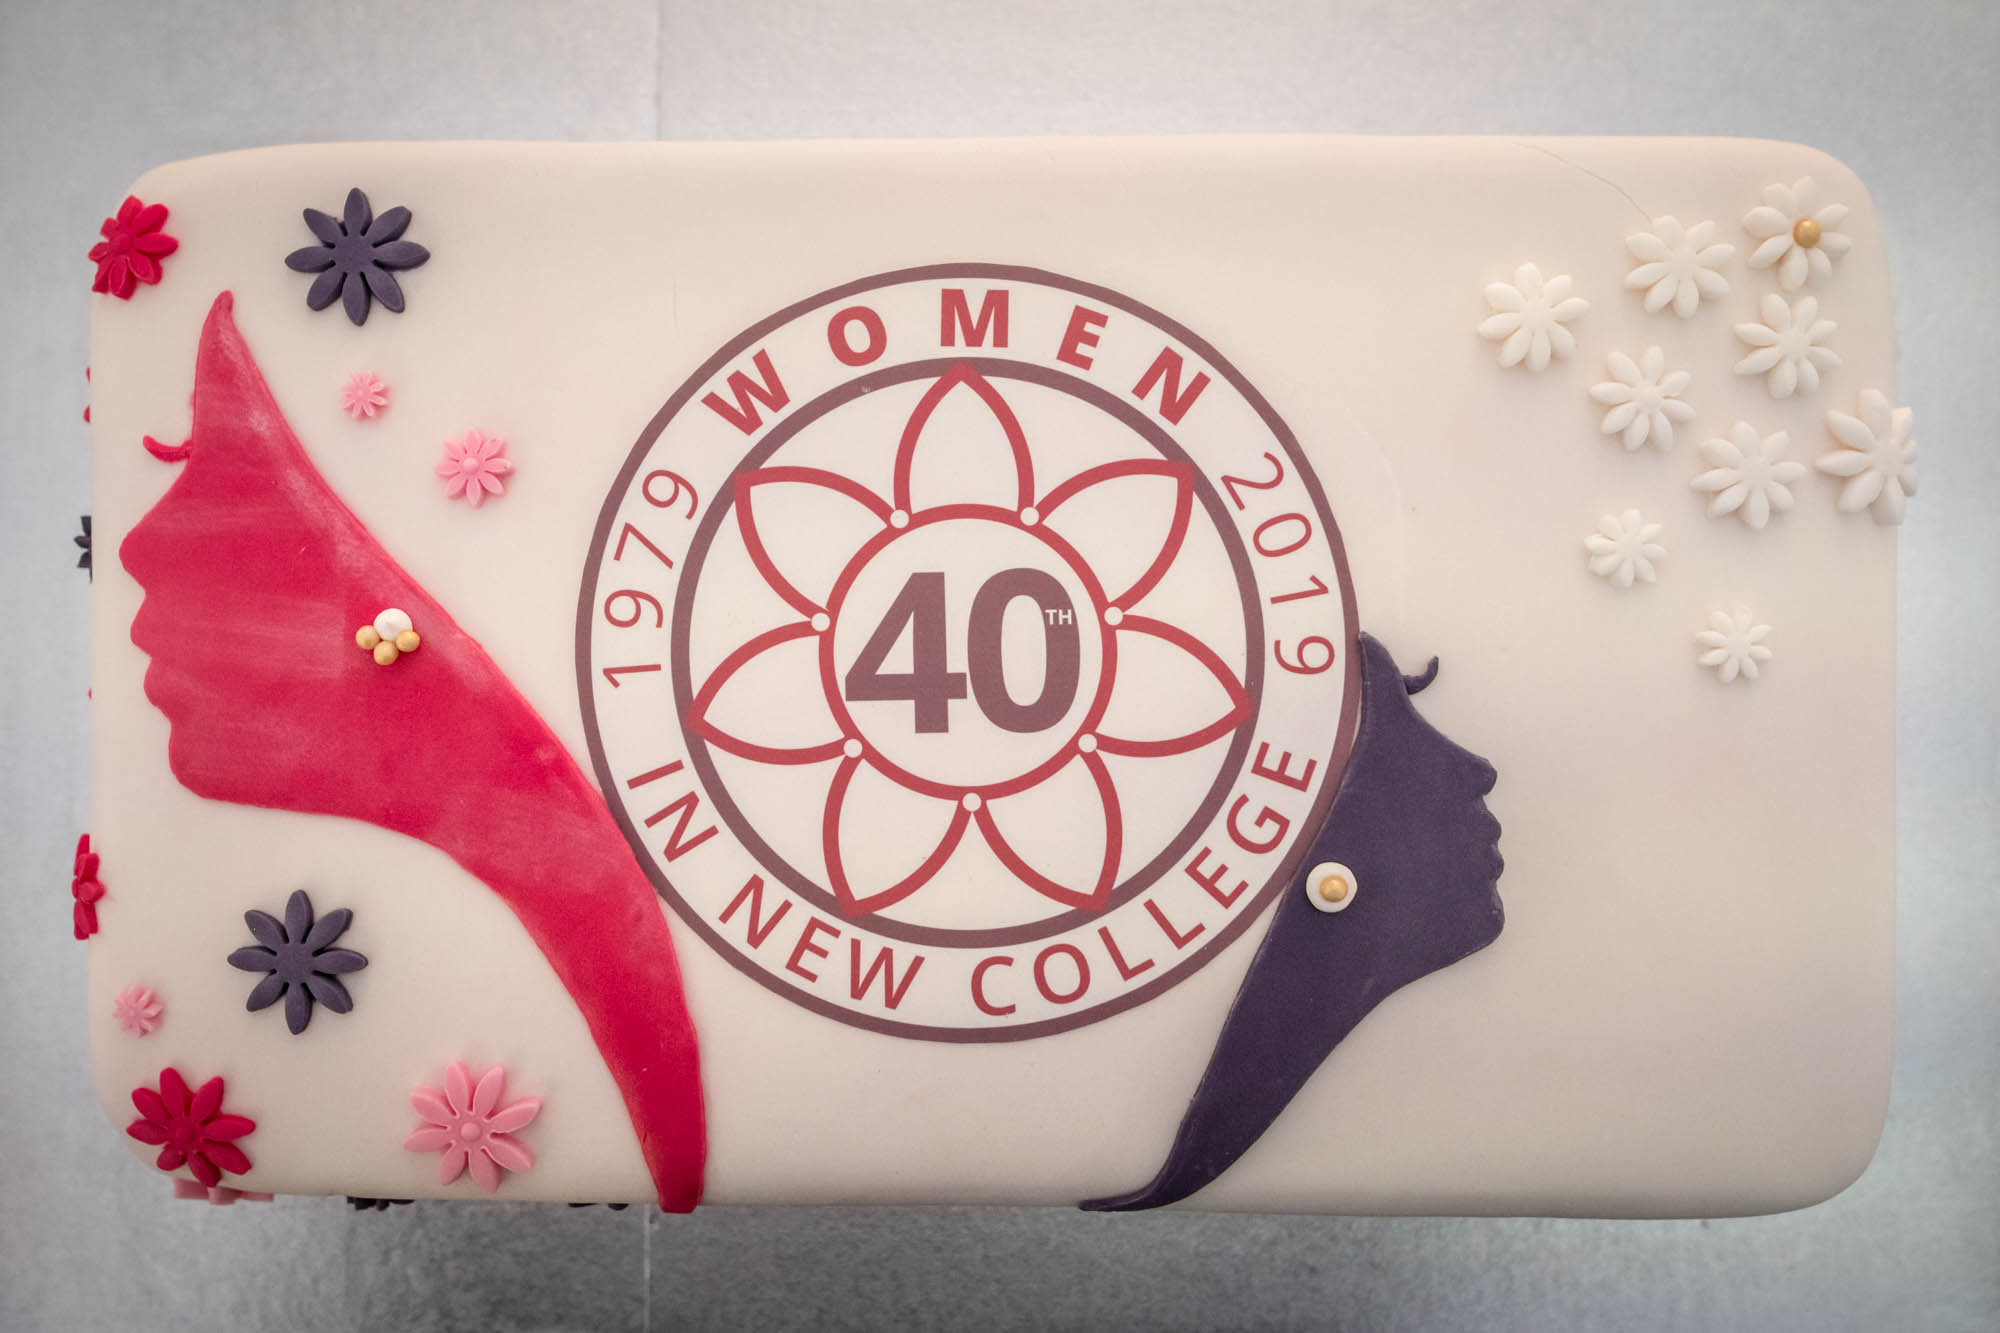 The 40th anniversary cake